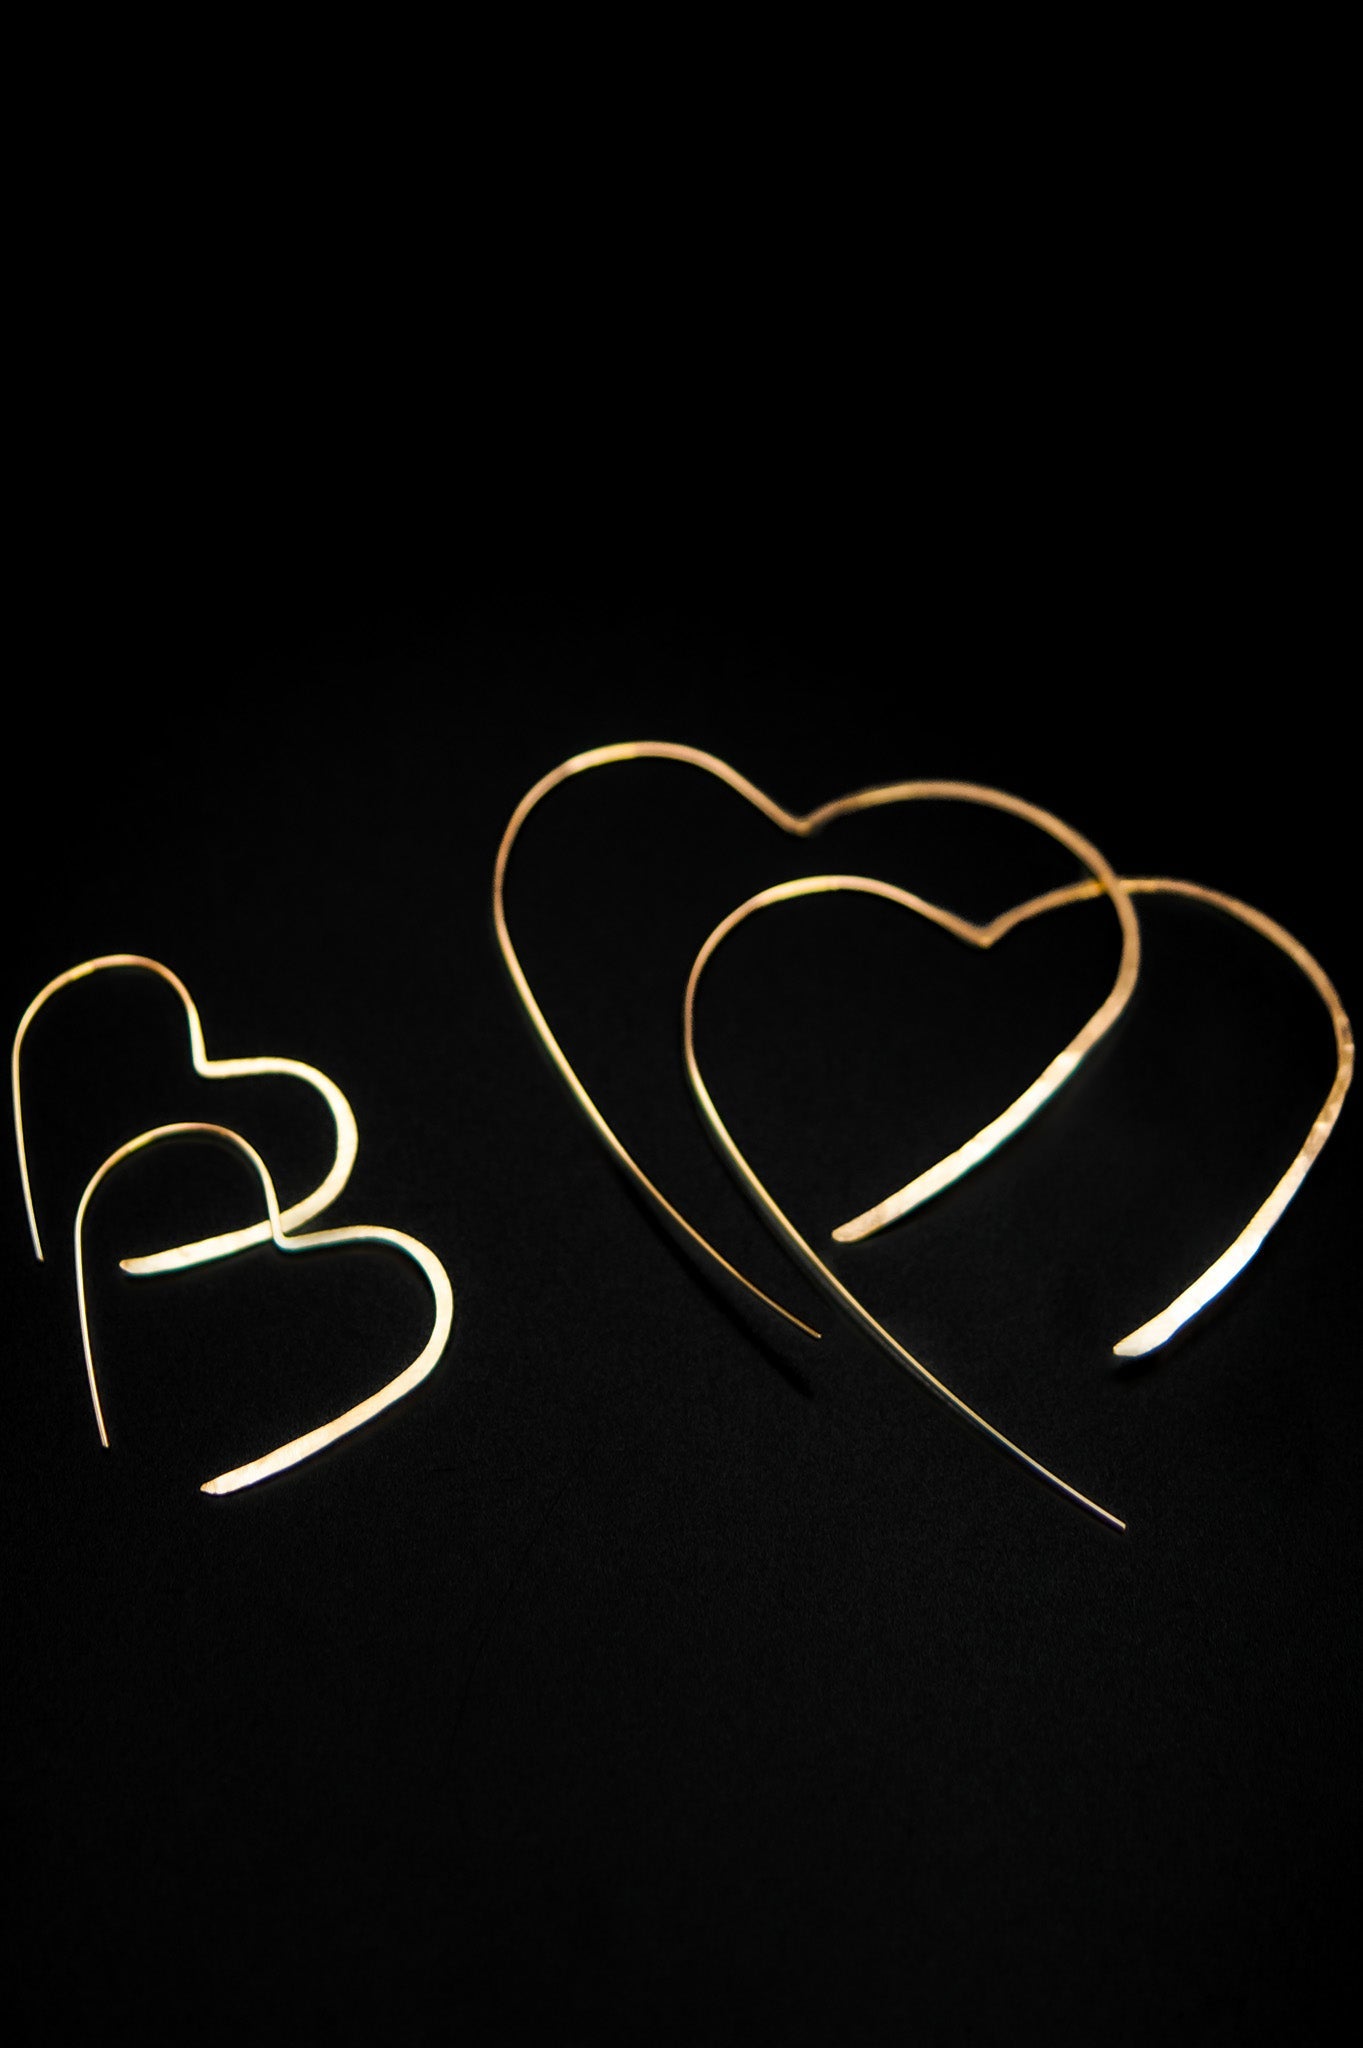 Mini Open Heart Hoop Earrings, Gold Fill, Rose Gold Fill or Sterling Silver